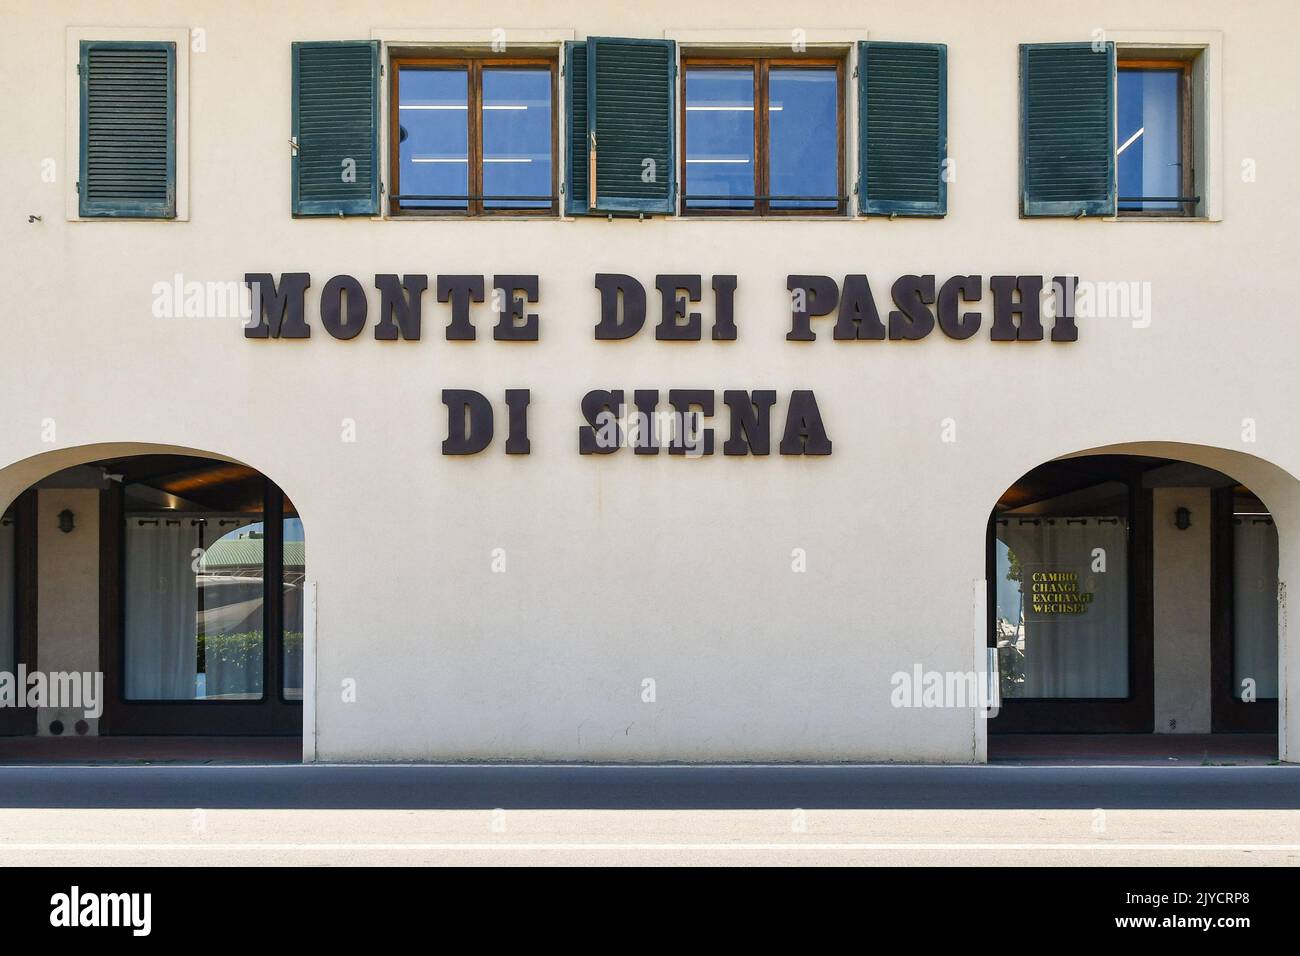 Façade of the Monte dei Paschi di Siena, historical Italian bank, in the coastal town of Castiglione della Pescaia, Grosseto, Tuscany, Italy Stock Photo